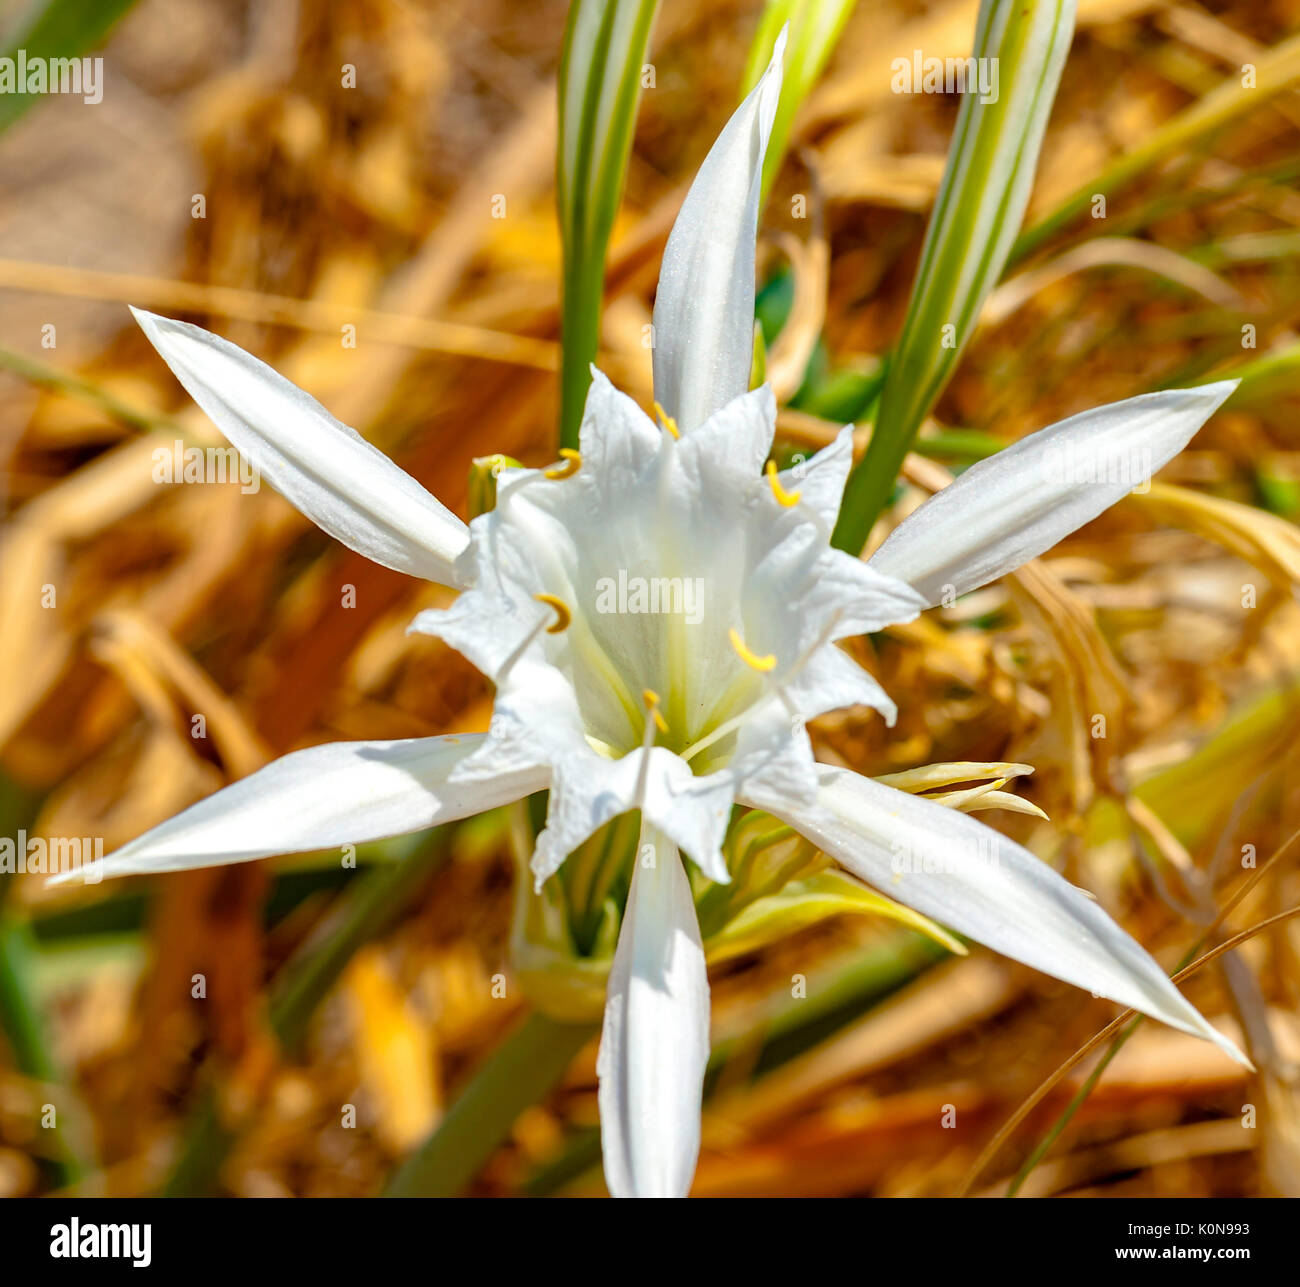 Seelilie, krautige Pflanze mit weißen Blüten, große, duftende, blüht im Juli und August am Strand Dünen der Park' Küste Dune" Stockfoto